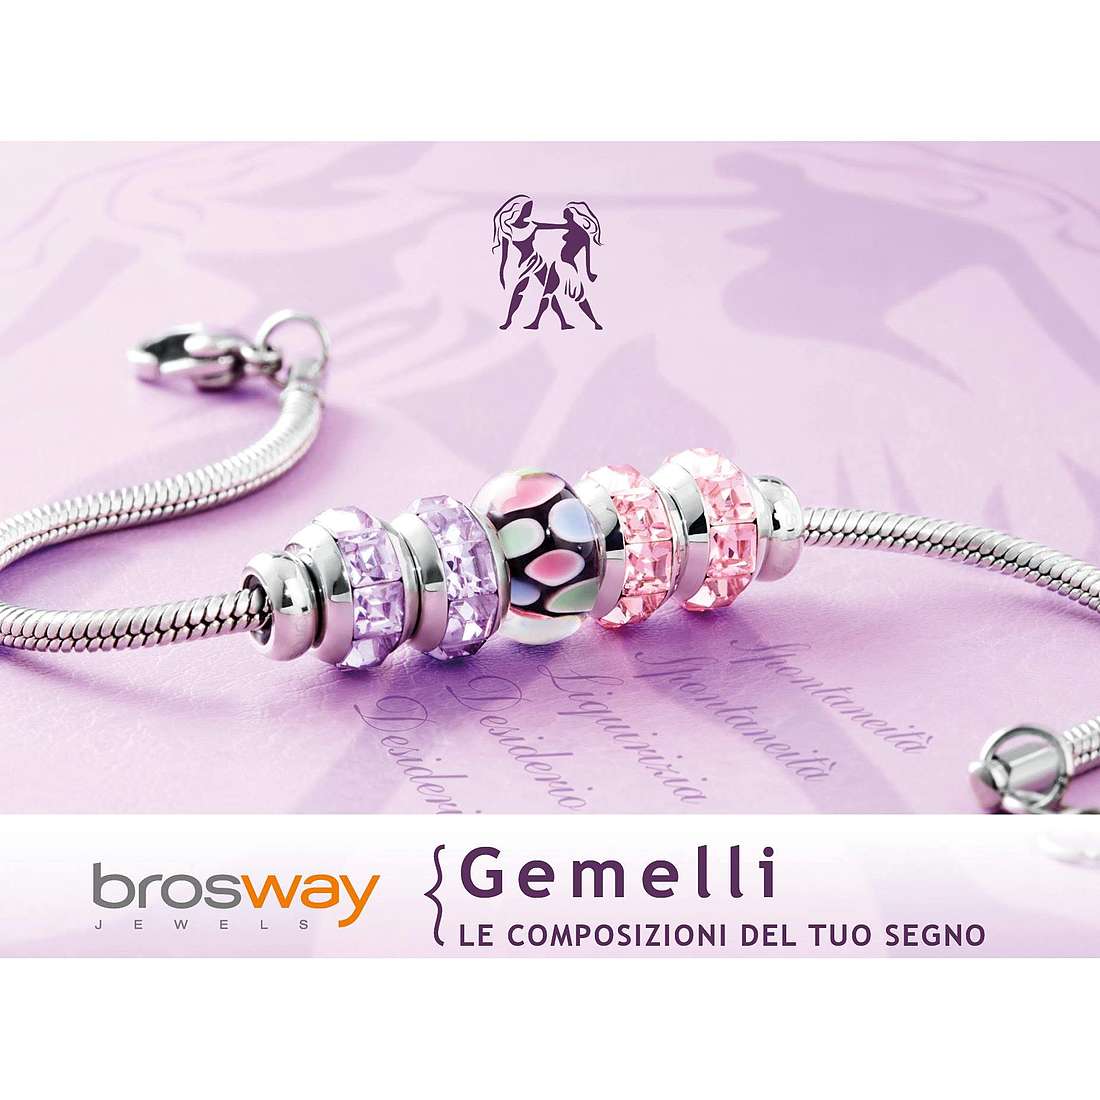 bracelet woman zodiac sign Gemini Brosway jewel Tres Jolie Mini BTJMZ03